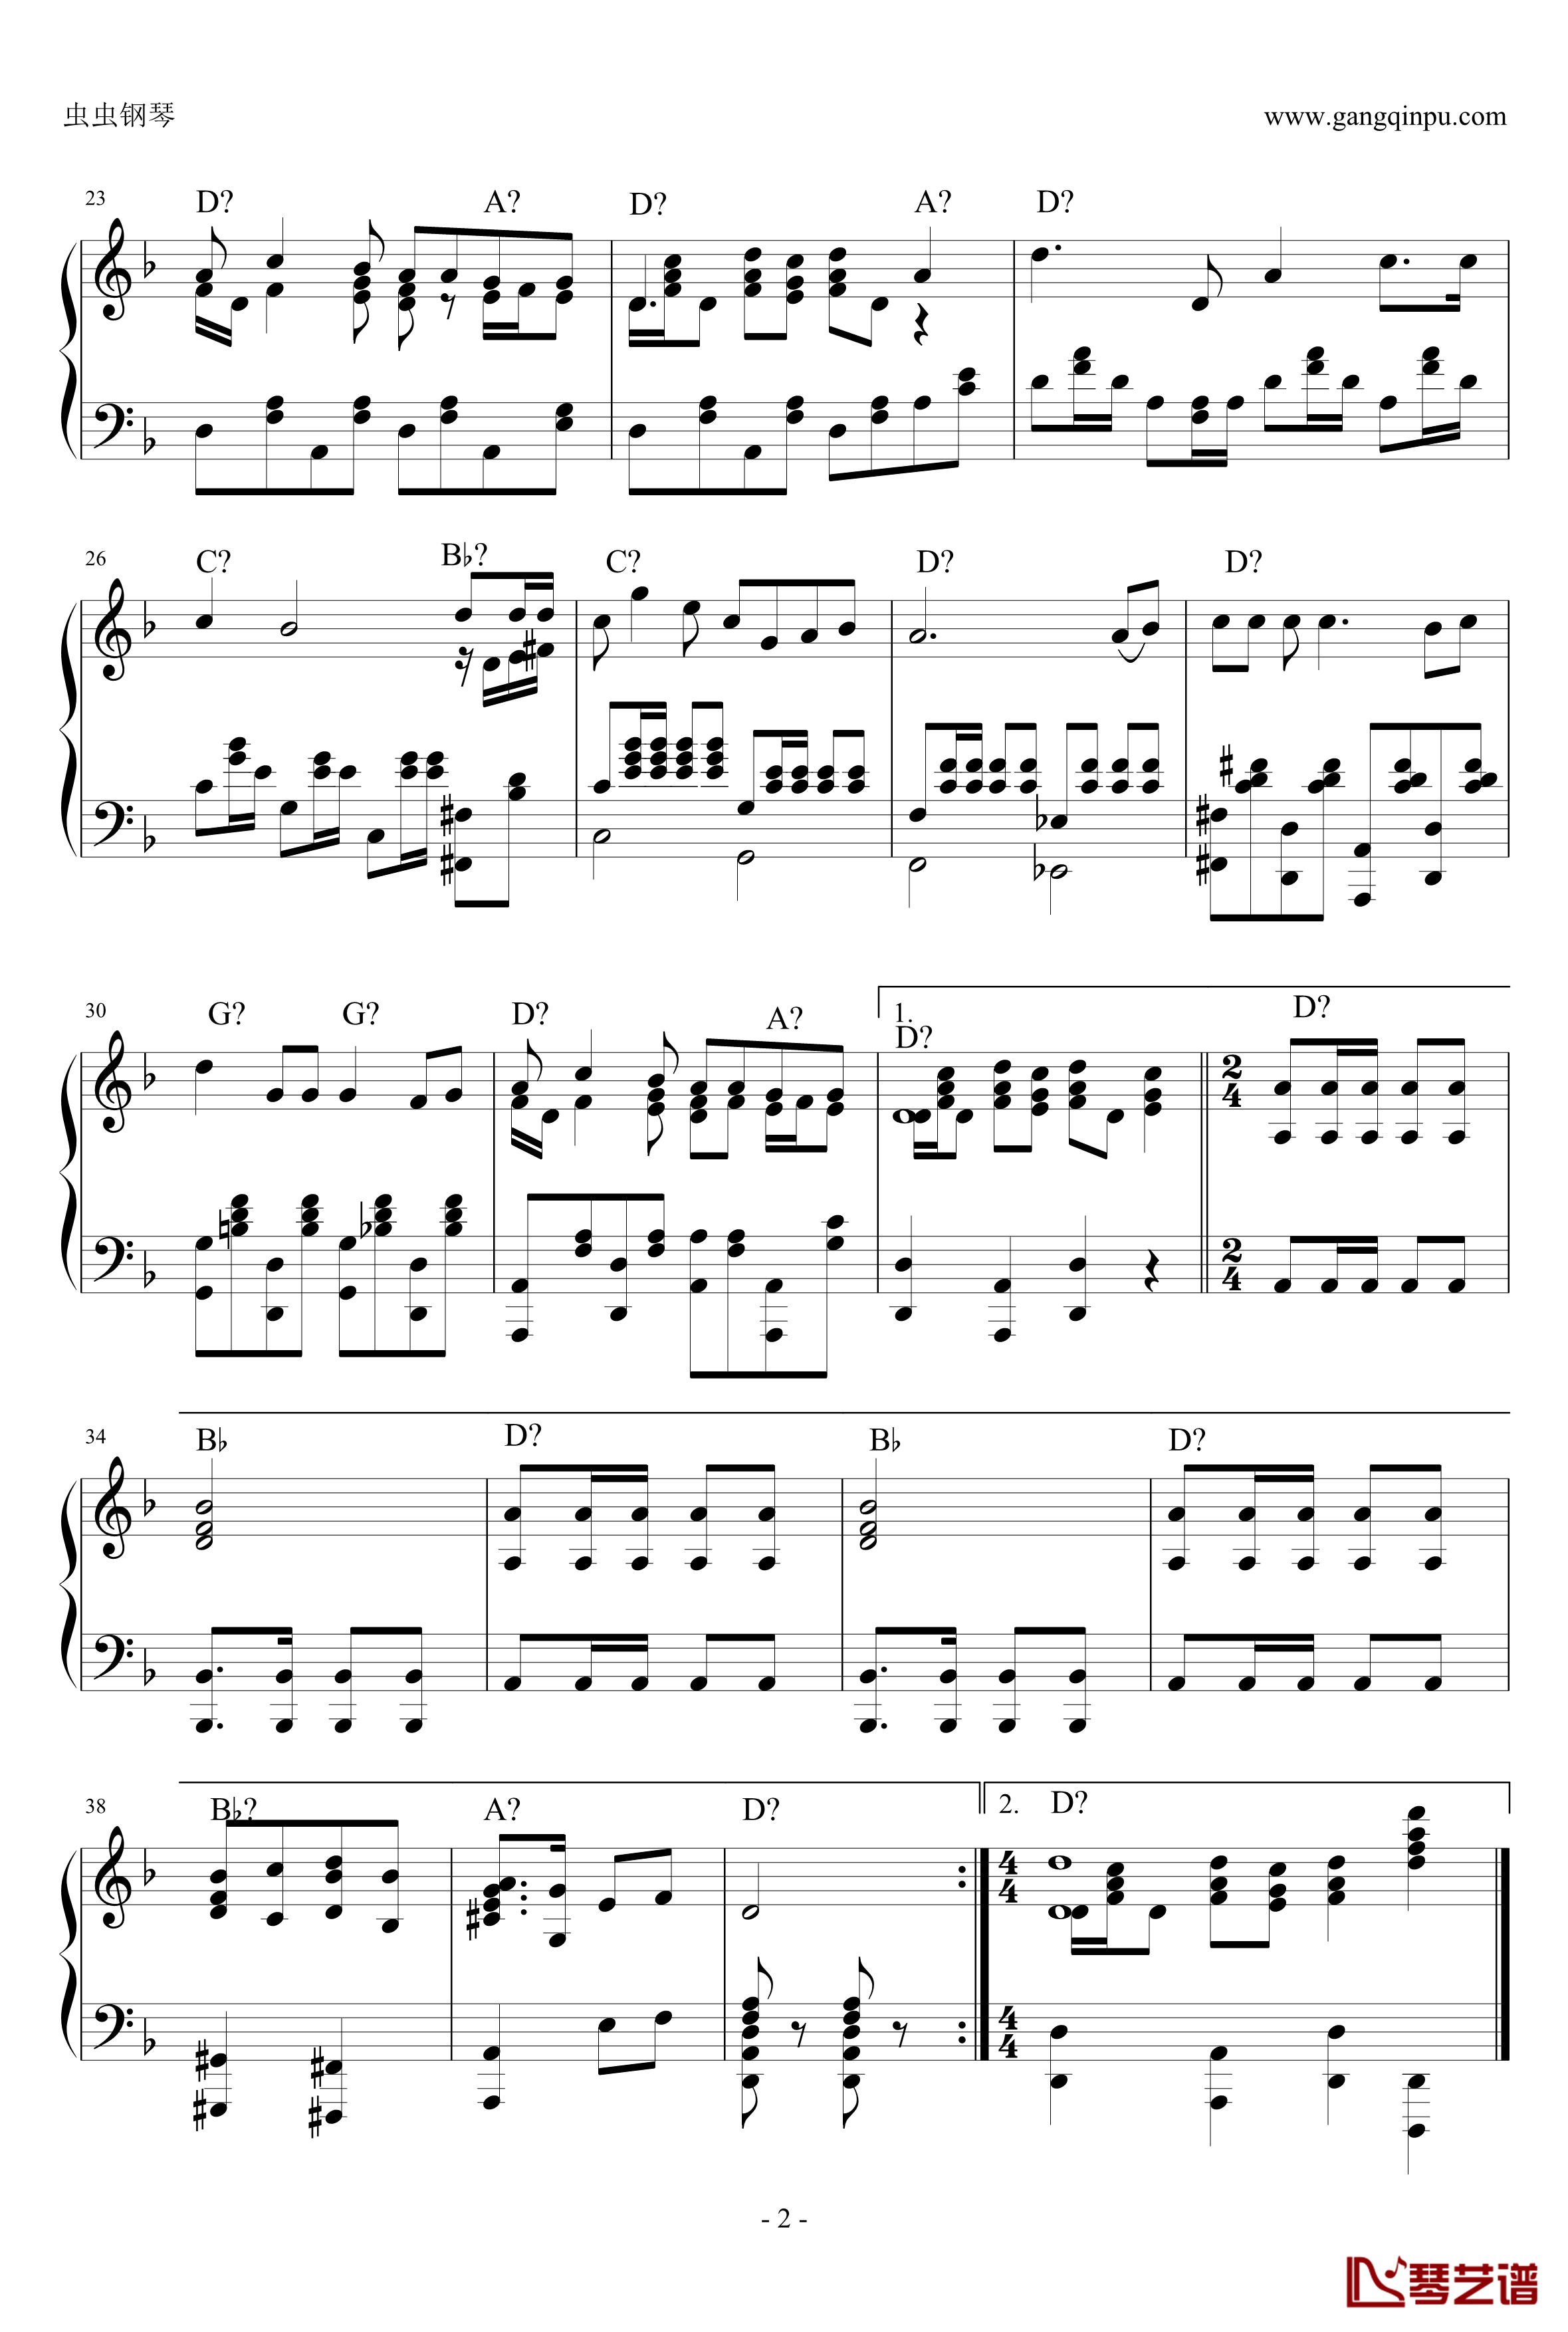 共青团员之歌钢琴谱-前苏联-索洛维约夫-谢多伊2